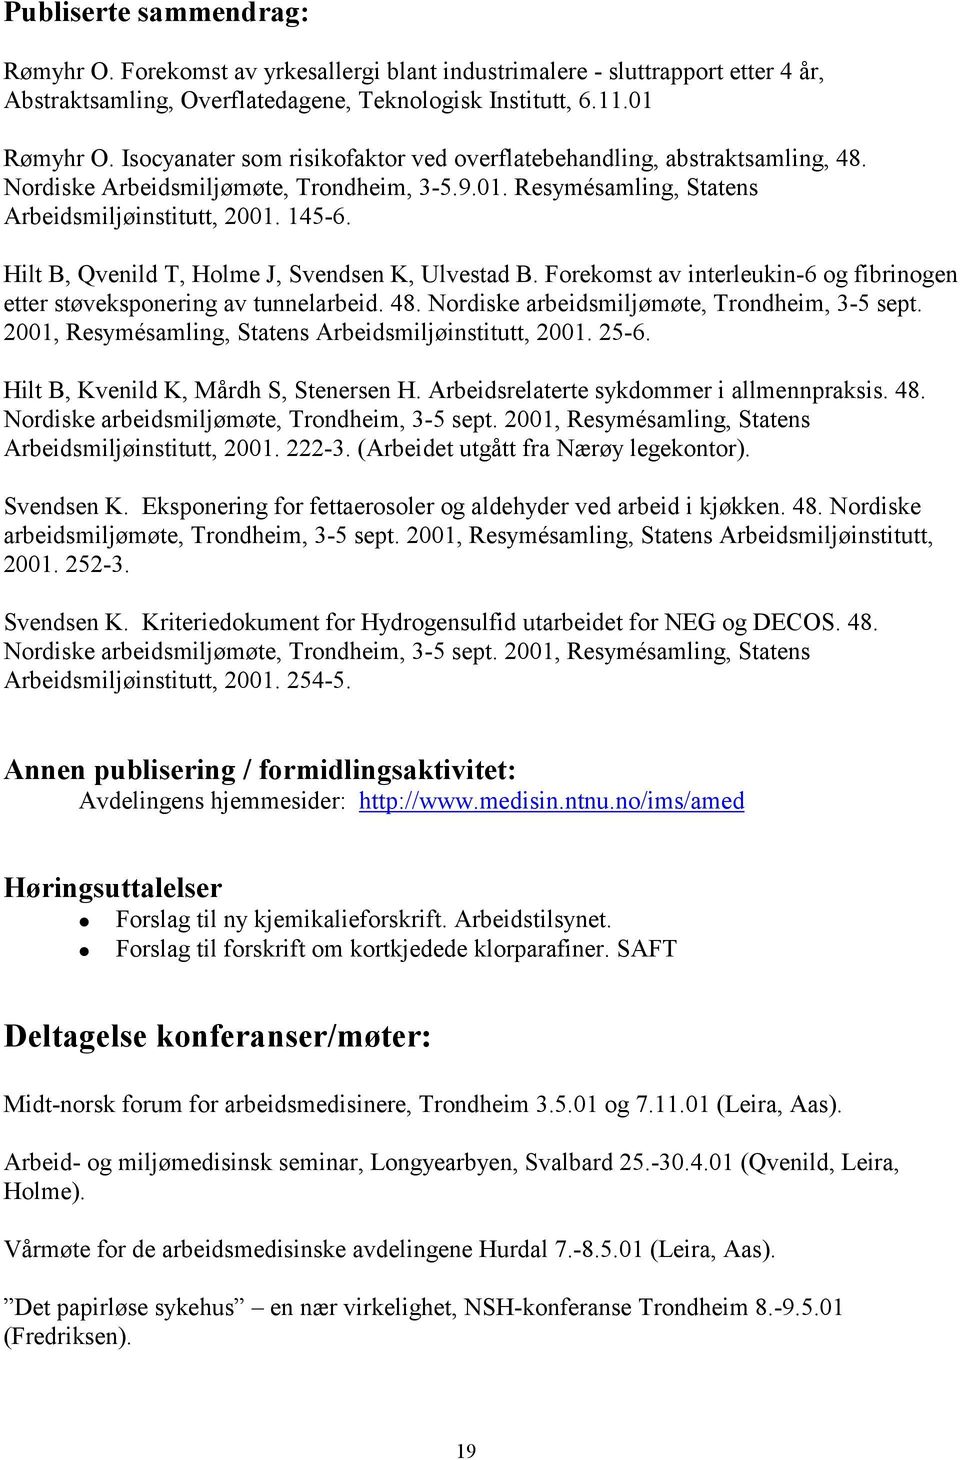 Hilt B, Qvenild T, Holme J, Svendsen K, Ulvestad B. Forekomst av interleukin-6 og fibrinogen etter støveksponering av tunnelarbeid. 48. Nordiske arbeidsmiljømøte, Trondheim, 3-5 sept.